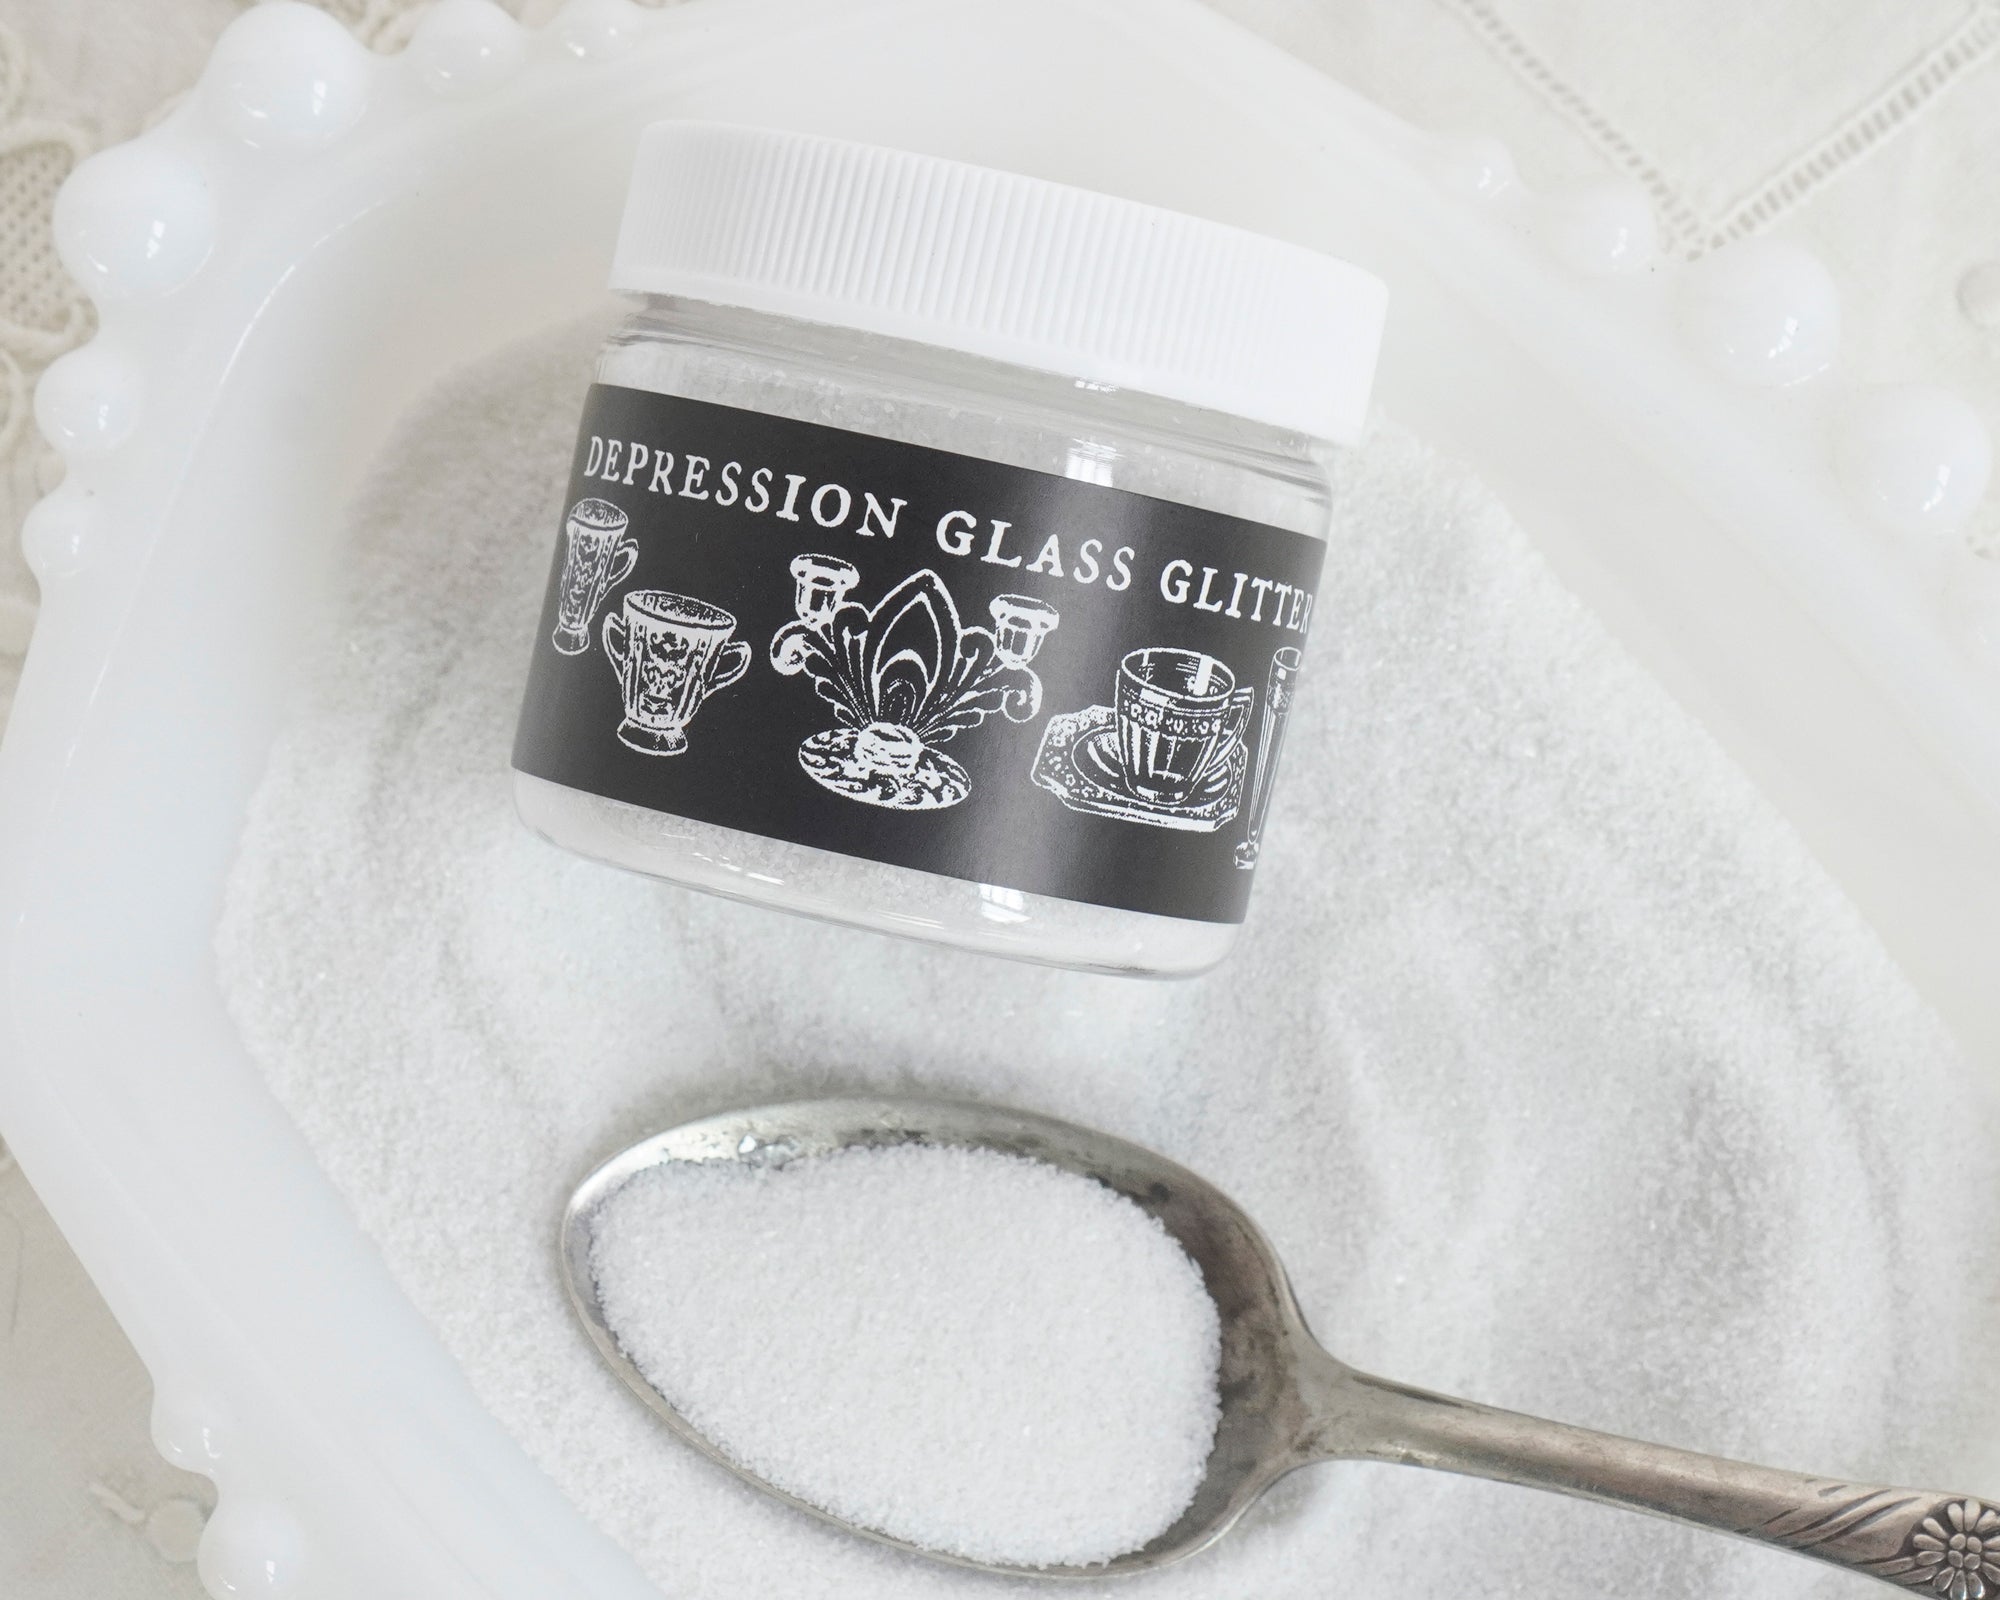 Milk Glass Glitter, FINE GRAIN - Opaque White Snow Effect